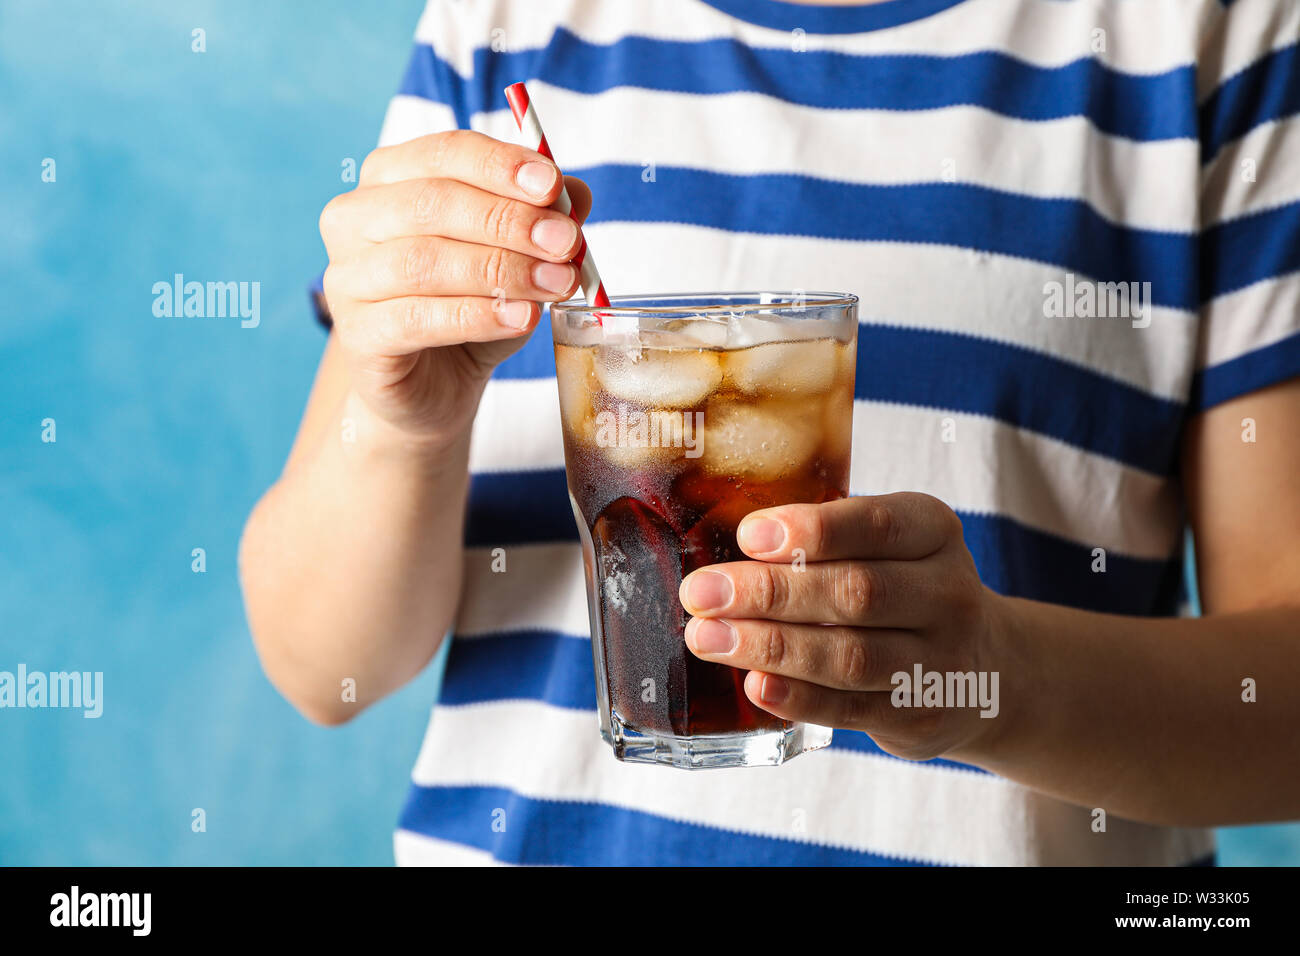 Mani femminili con in mano un bicchiere con cola e del tubicino Foto Stock